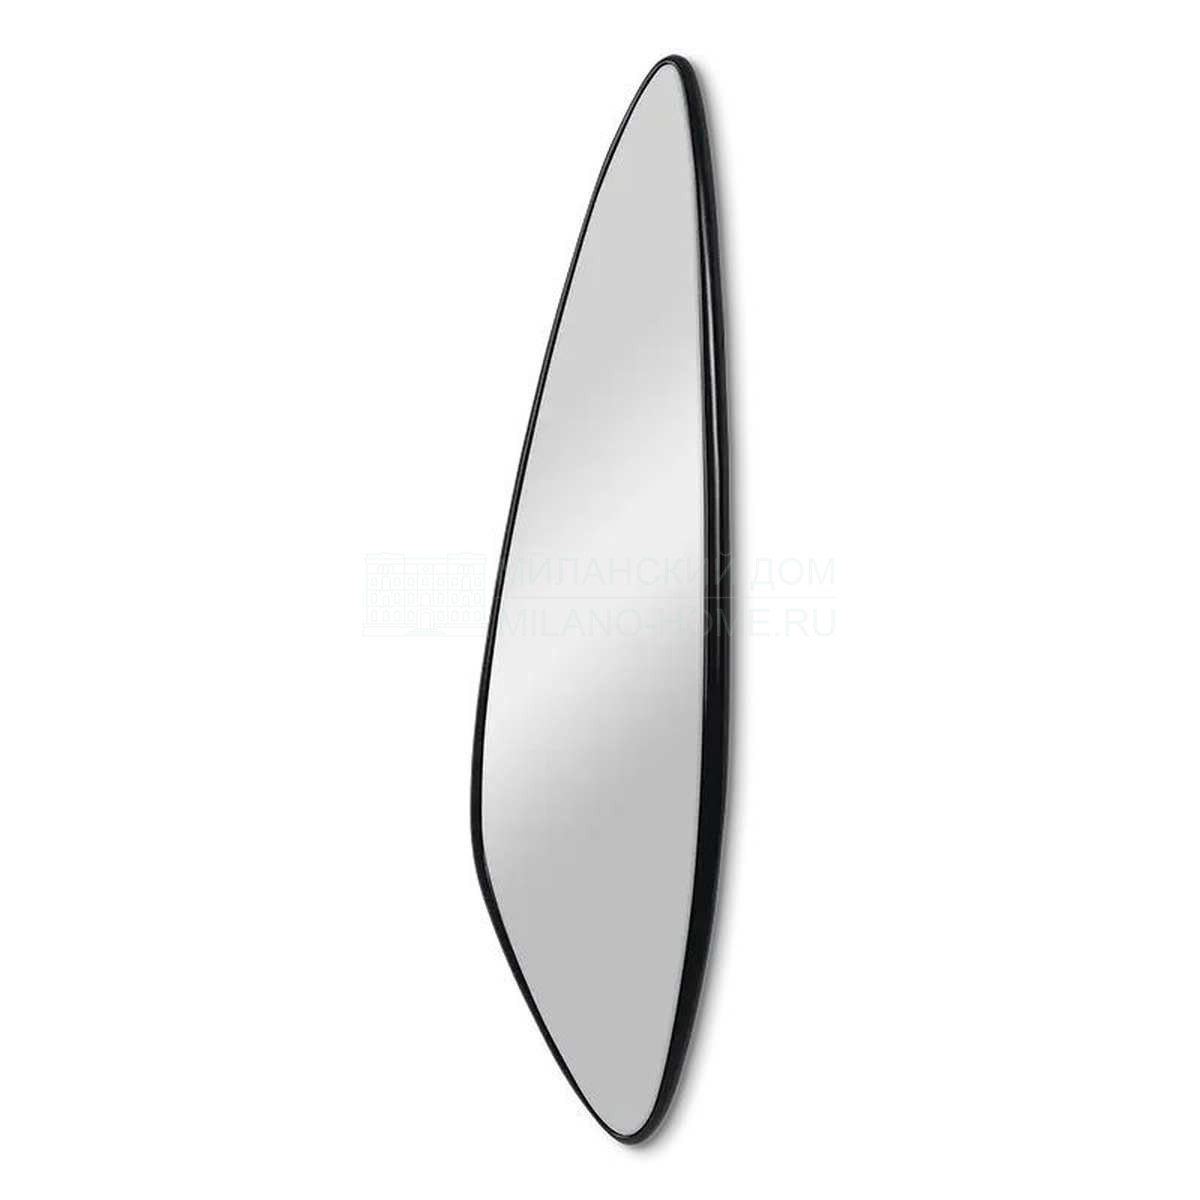 Зеркало настенное Aquilone mirror из США фабрики CHRISTOPHER GUY